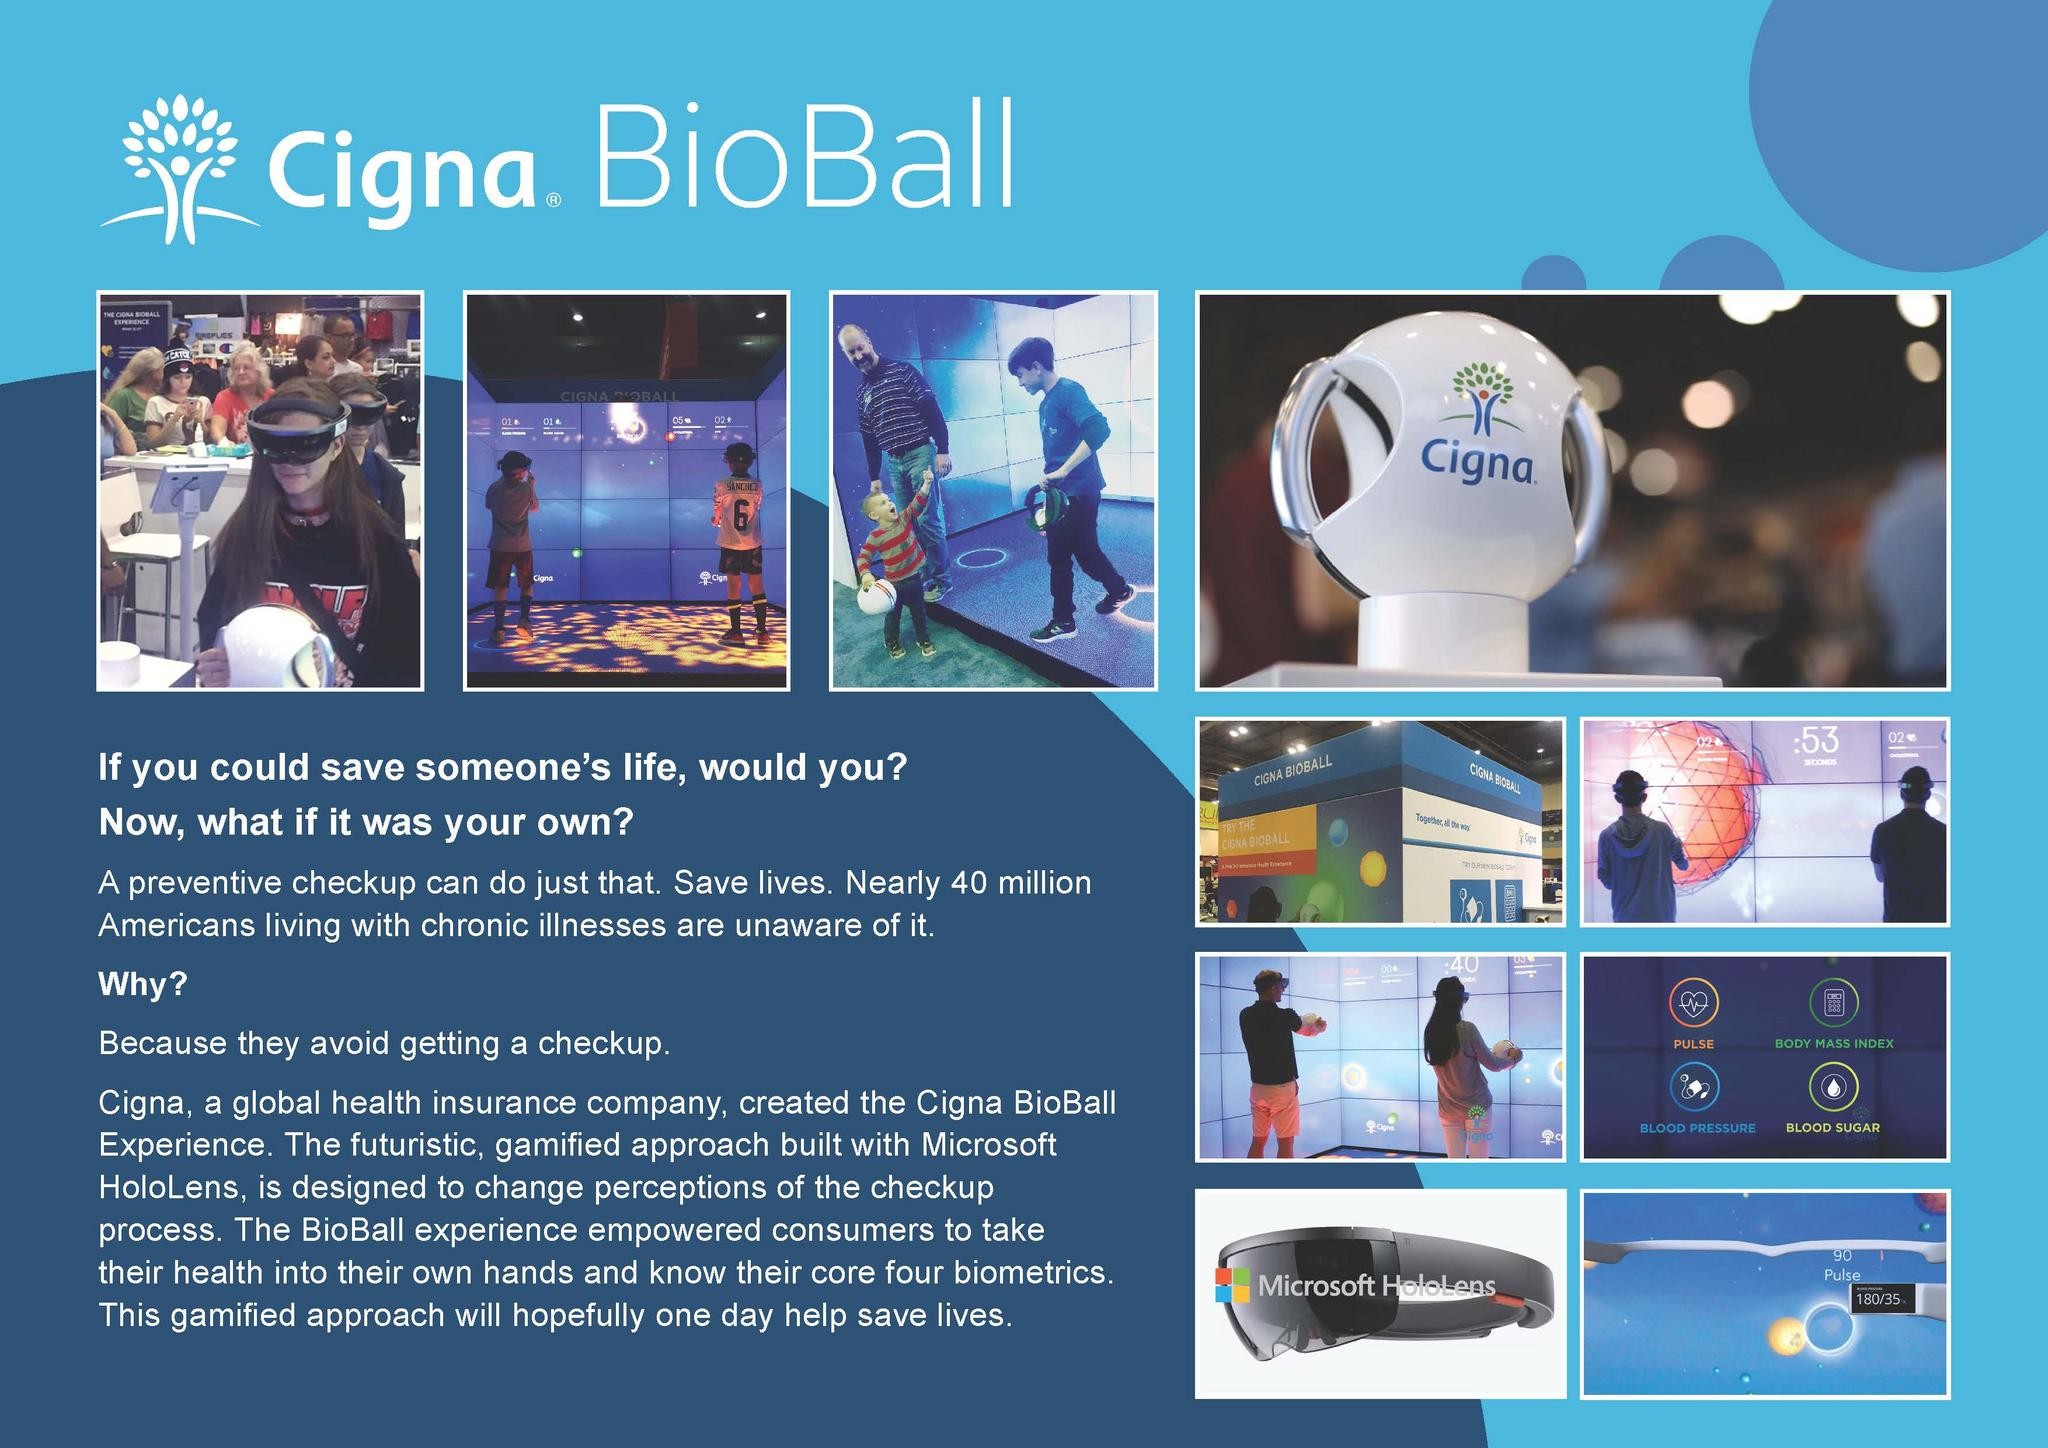 Cigna BioBall